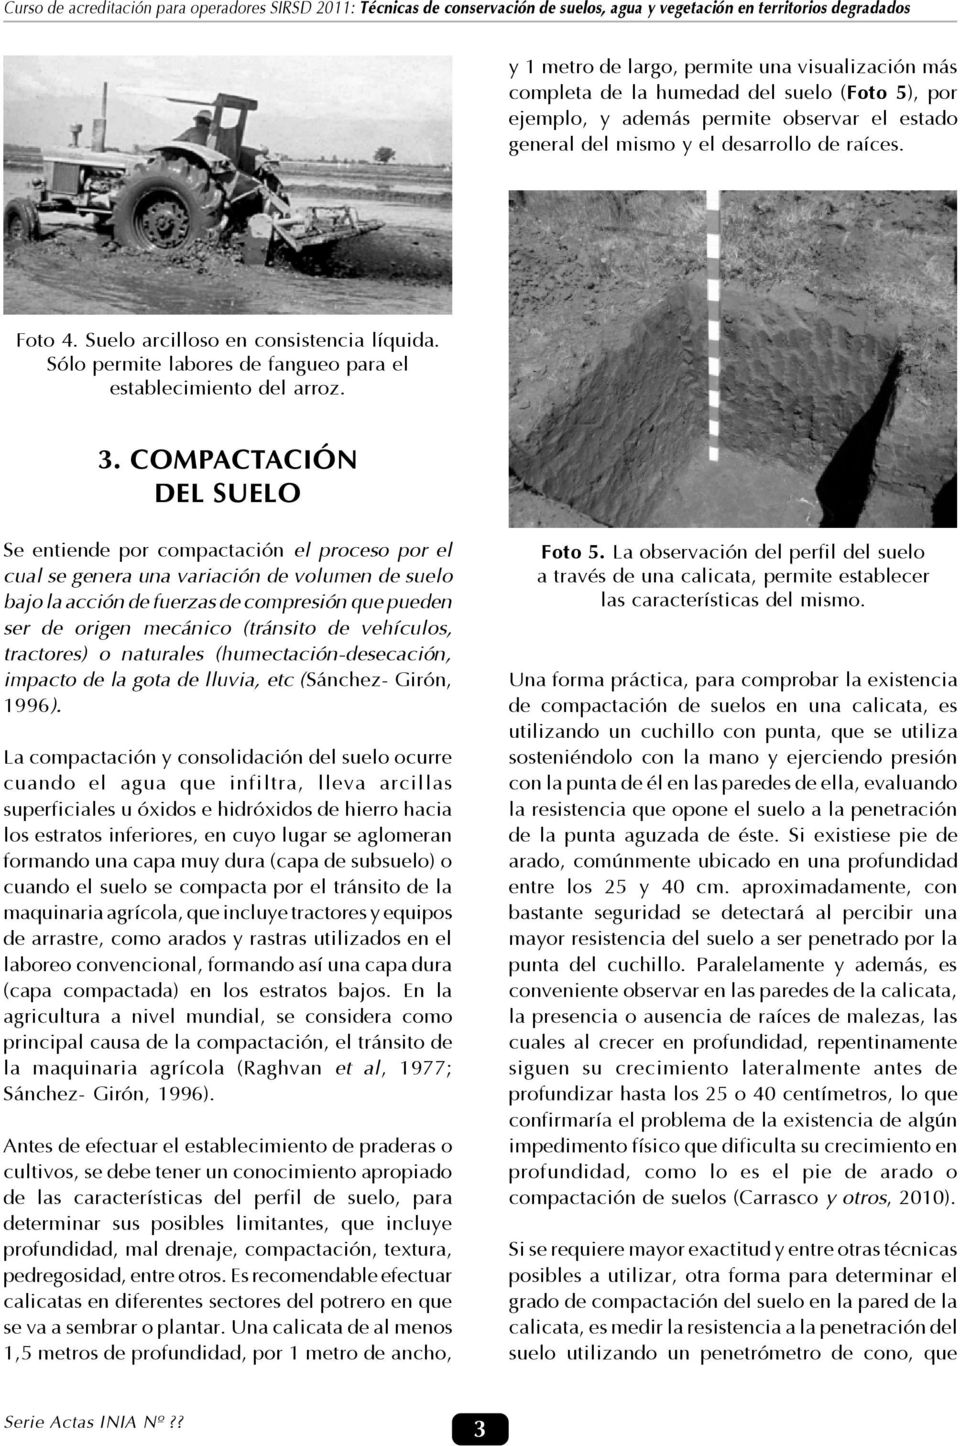 COMPACTACIÓN DEL SUELO Se entiende por compactación el proceso por el cual se genera una variación de volumen de suelo bajo la acción de fuerzas de compresión que pueden ser de origen mecánico